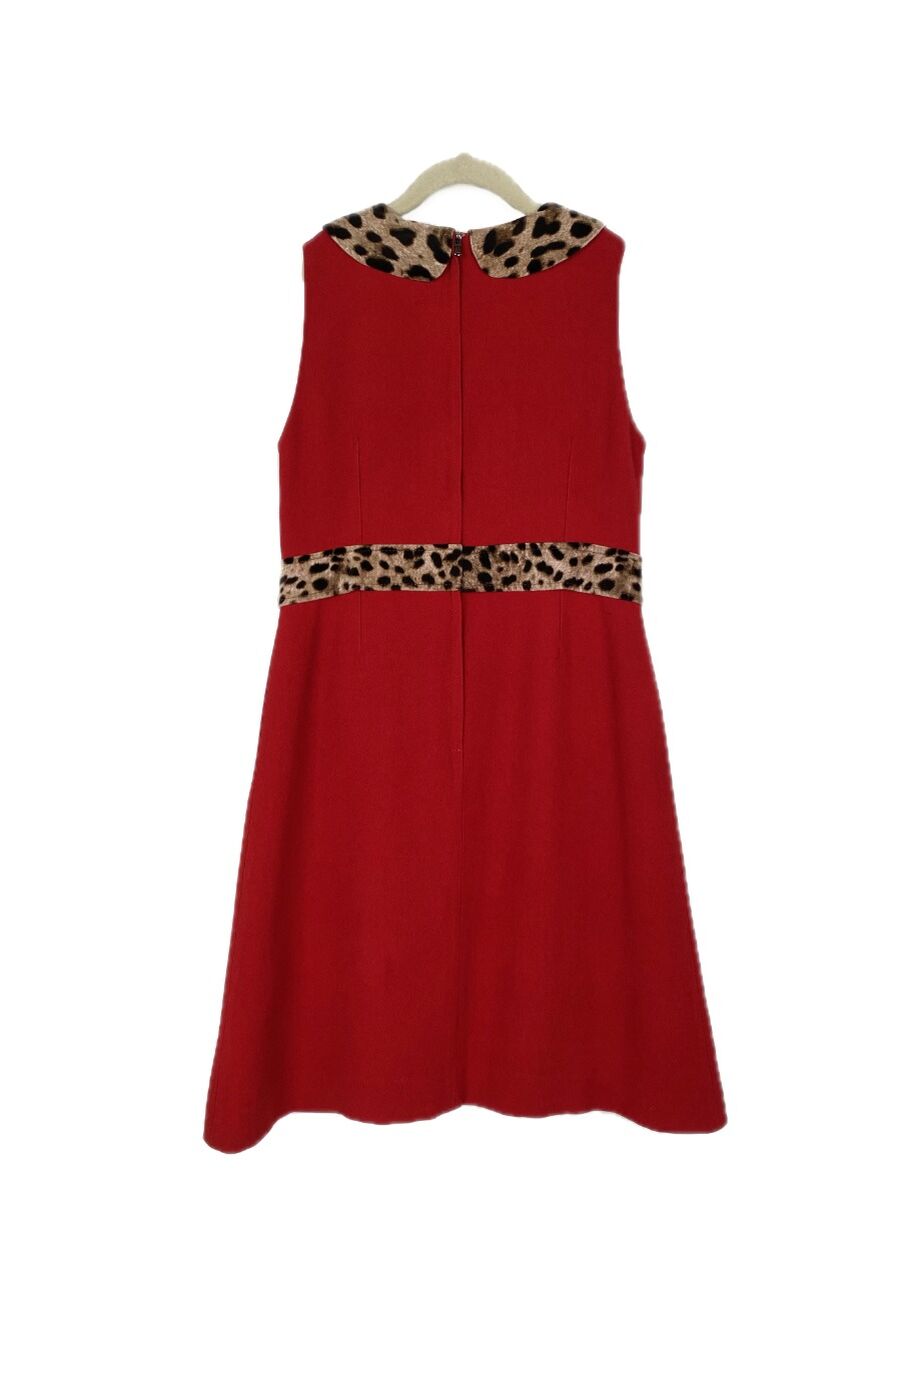 image 2 Детское платье красного цвета с леопардовым декором